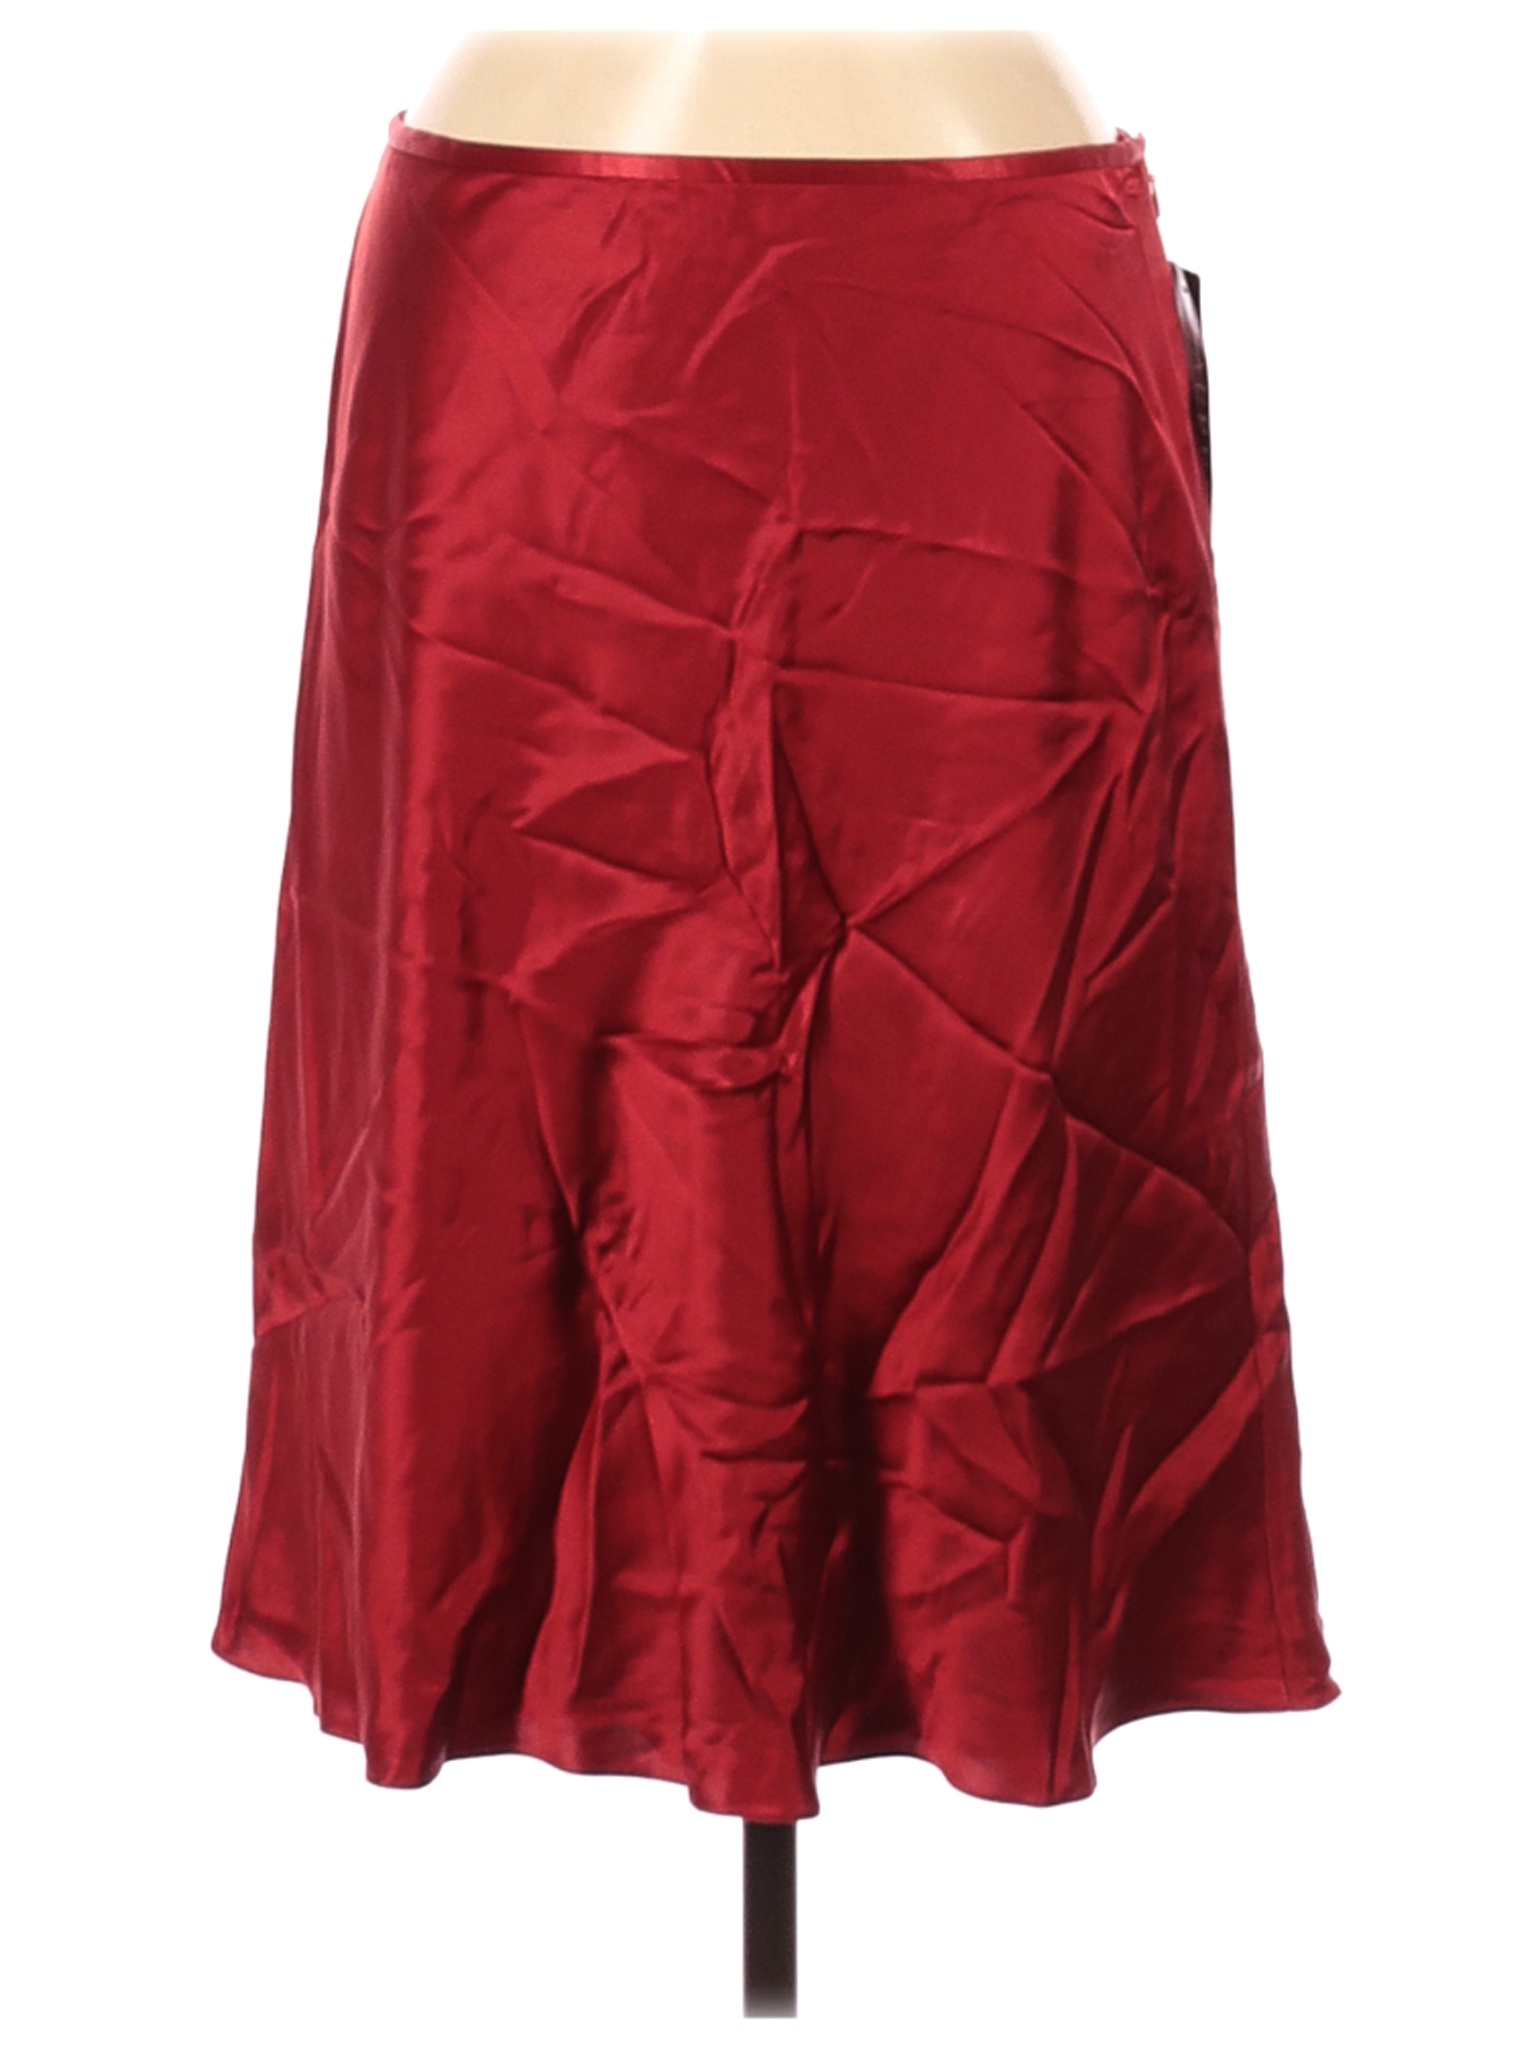 NWT Lauren by Ralph Lauren Women Red Silk Skirt 10 | eBay